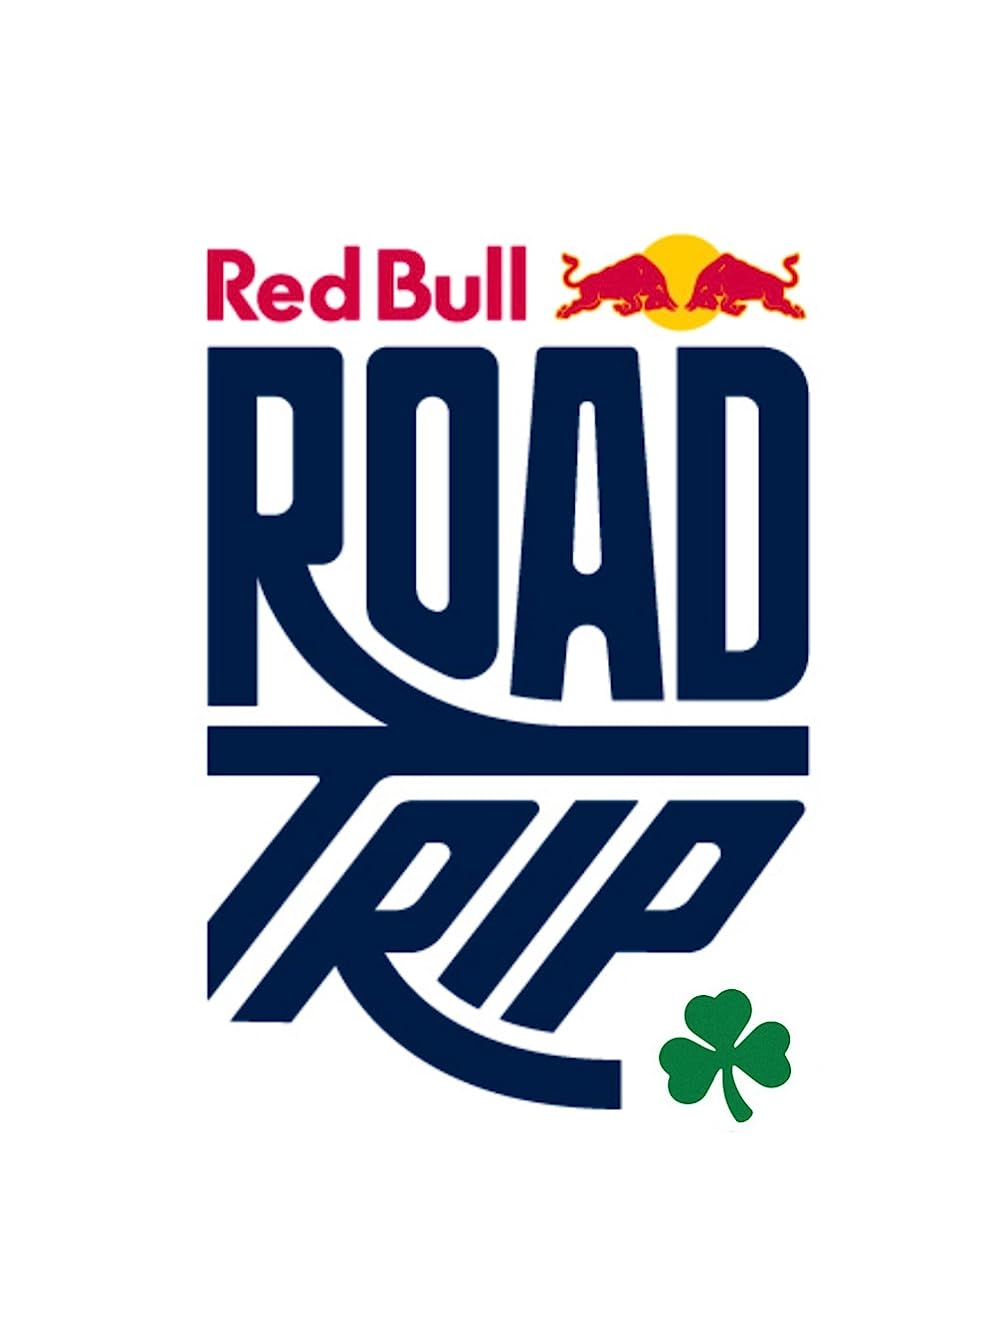 Red Bull: Irish Road Trip